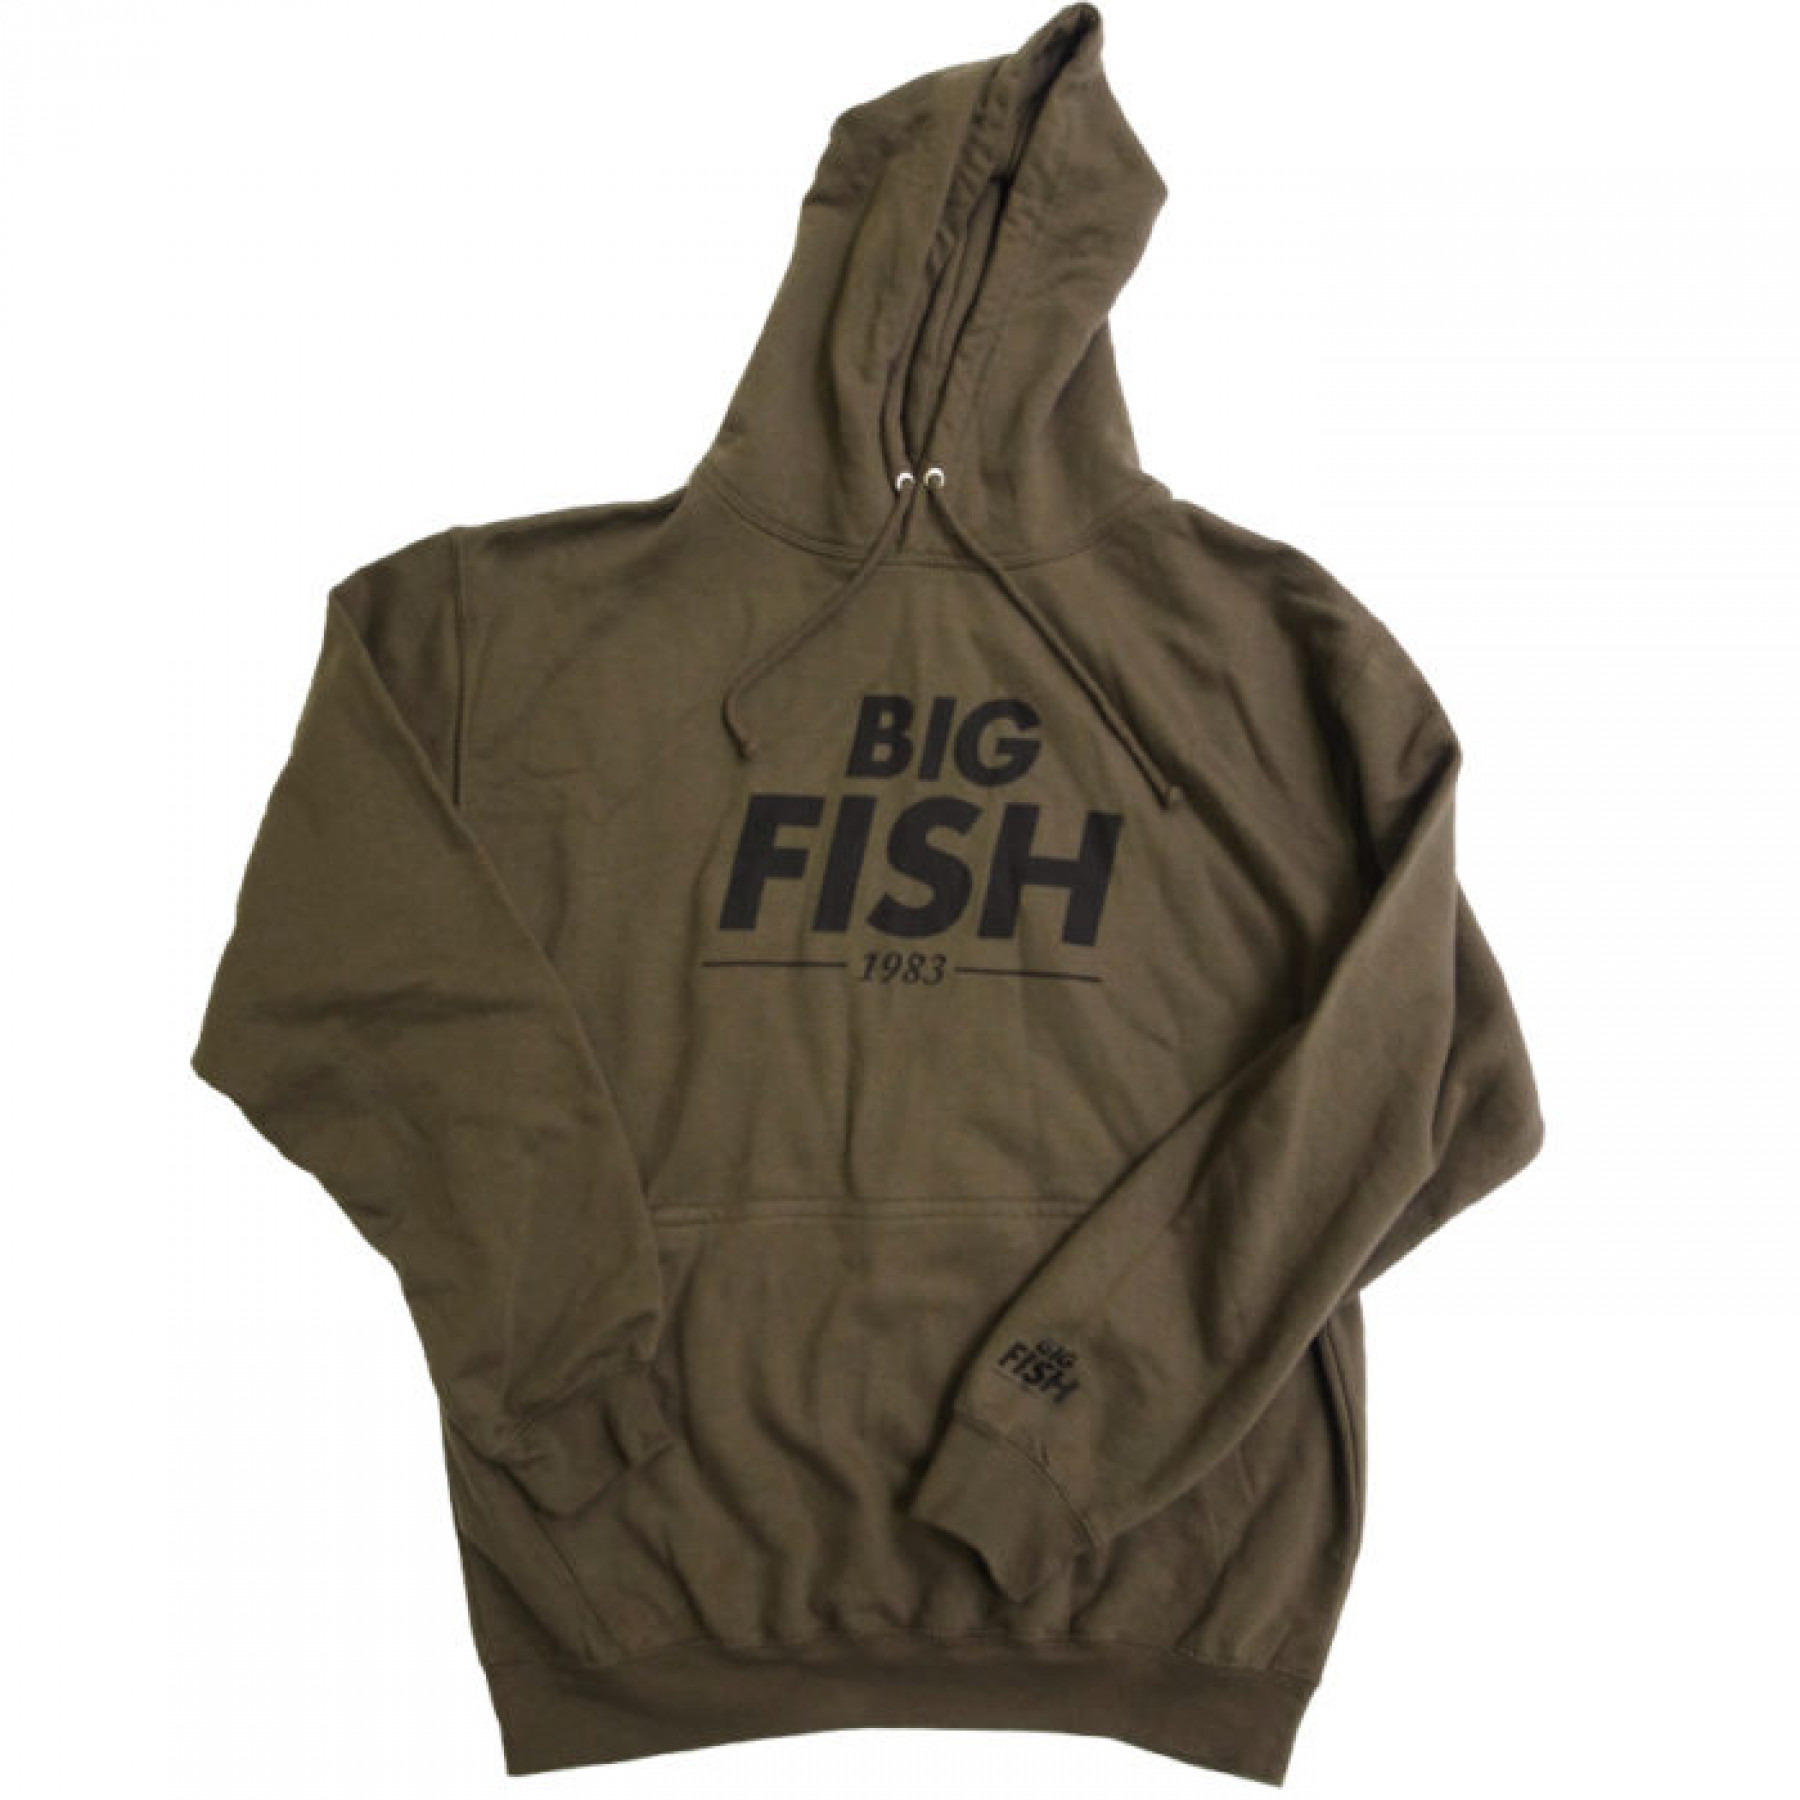 Felpa con logo Big Fish